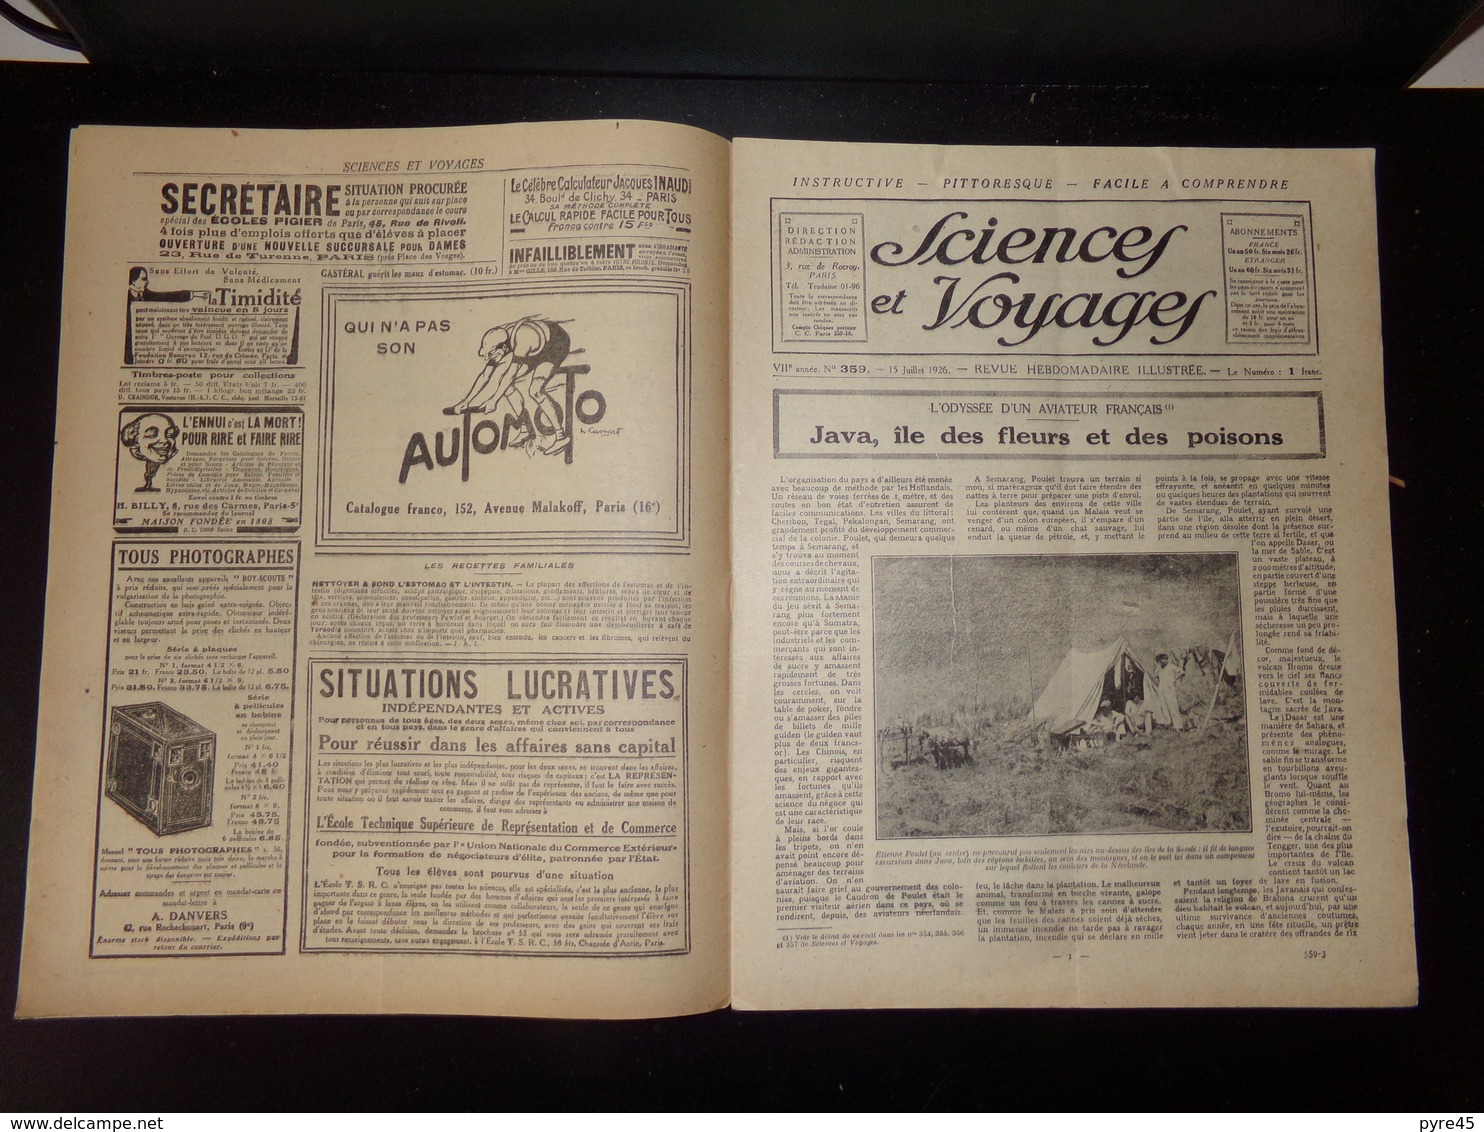 Sciences Et Voyages N° 359, Juillet 1926, " Une Locomotive Géante " - 1900 - 1949